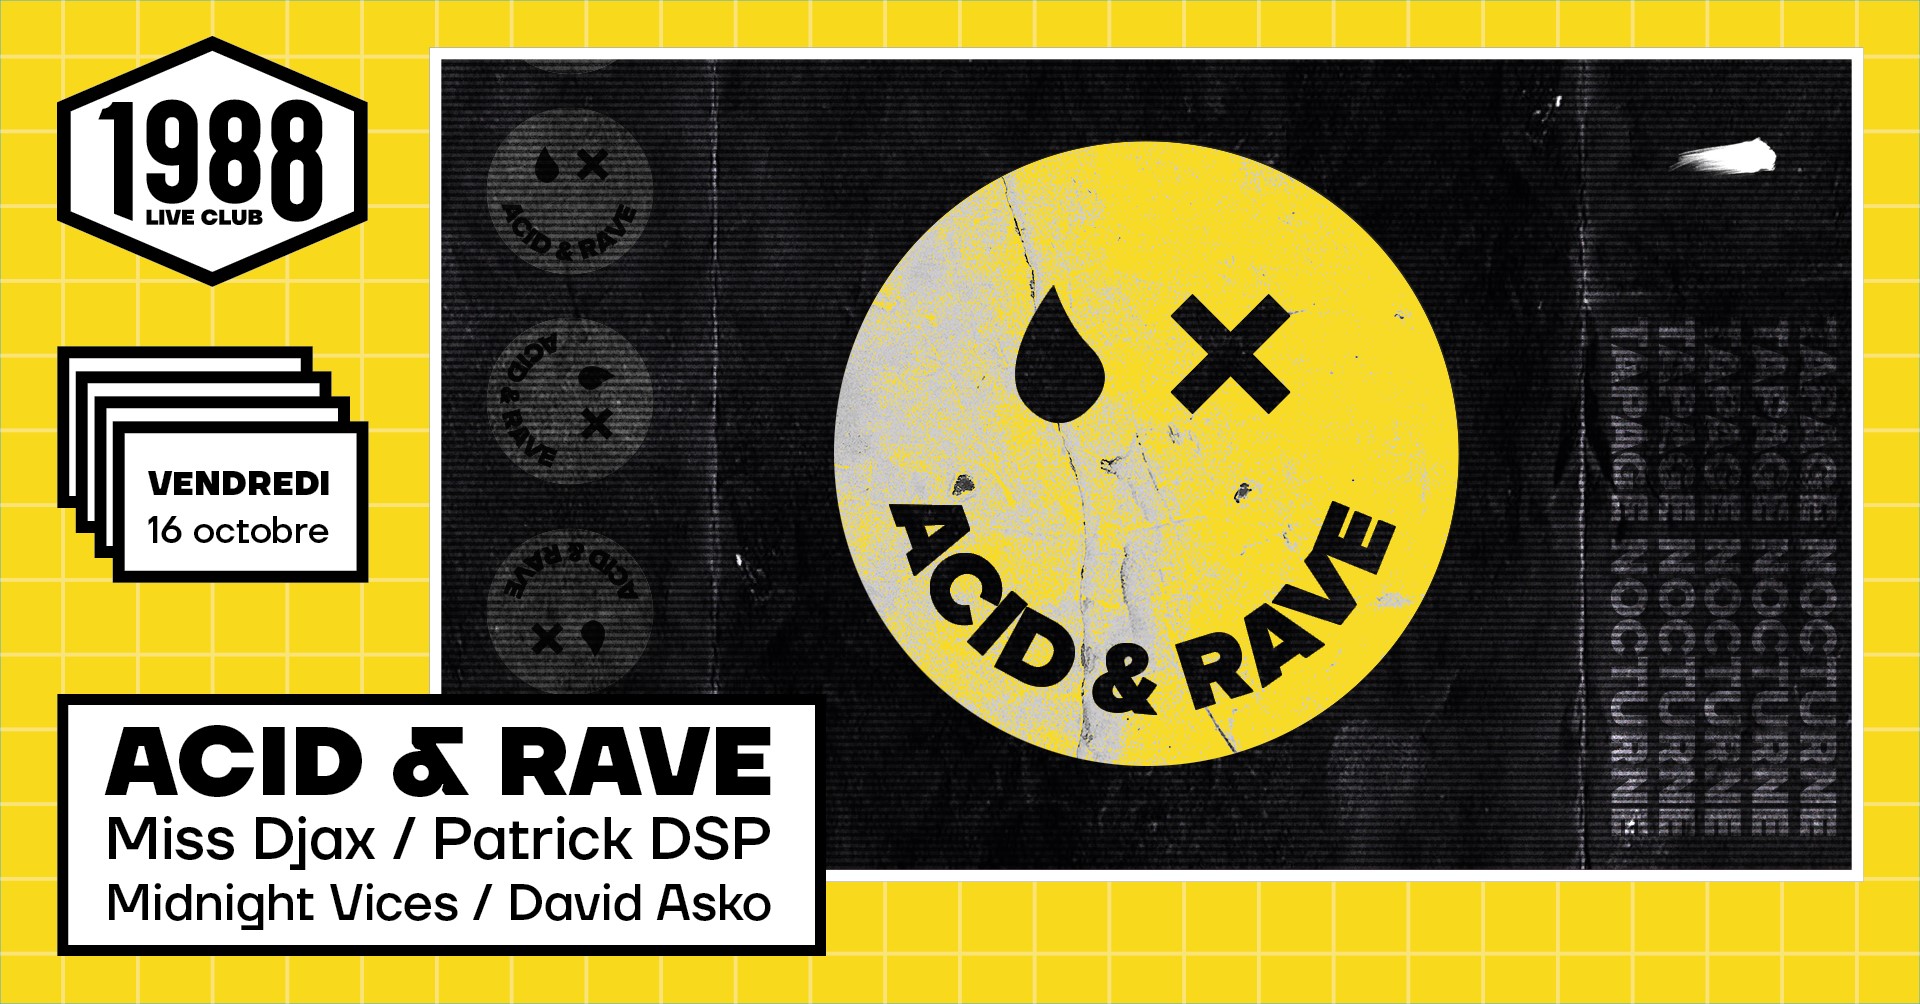 Soirée Acid & Rave au 1988 Live Club, le vendredi 16 octobre 2020